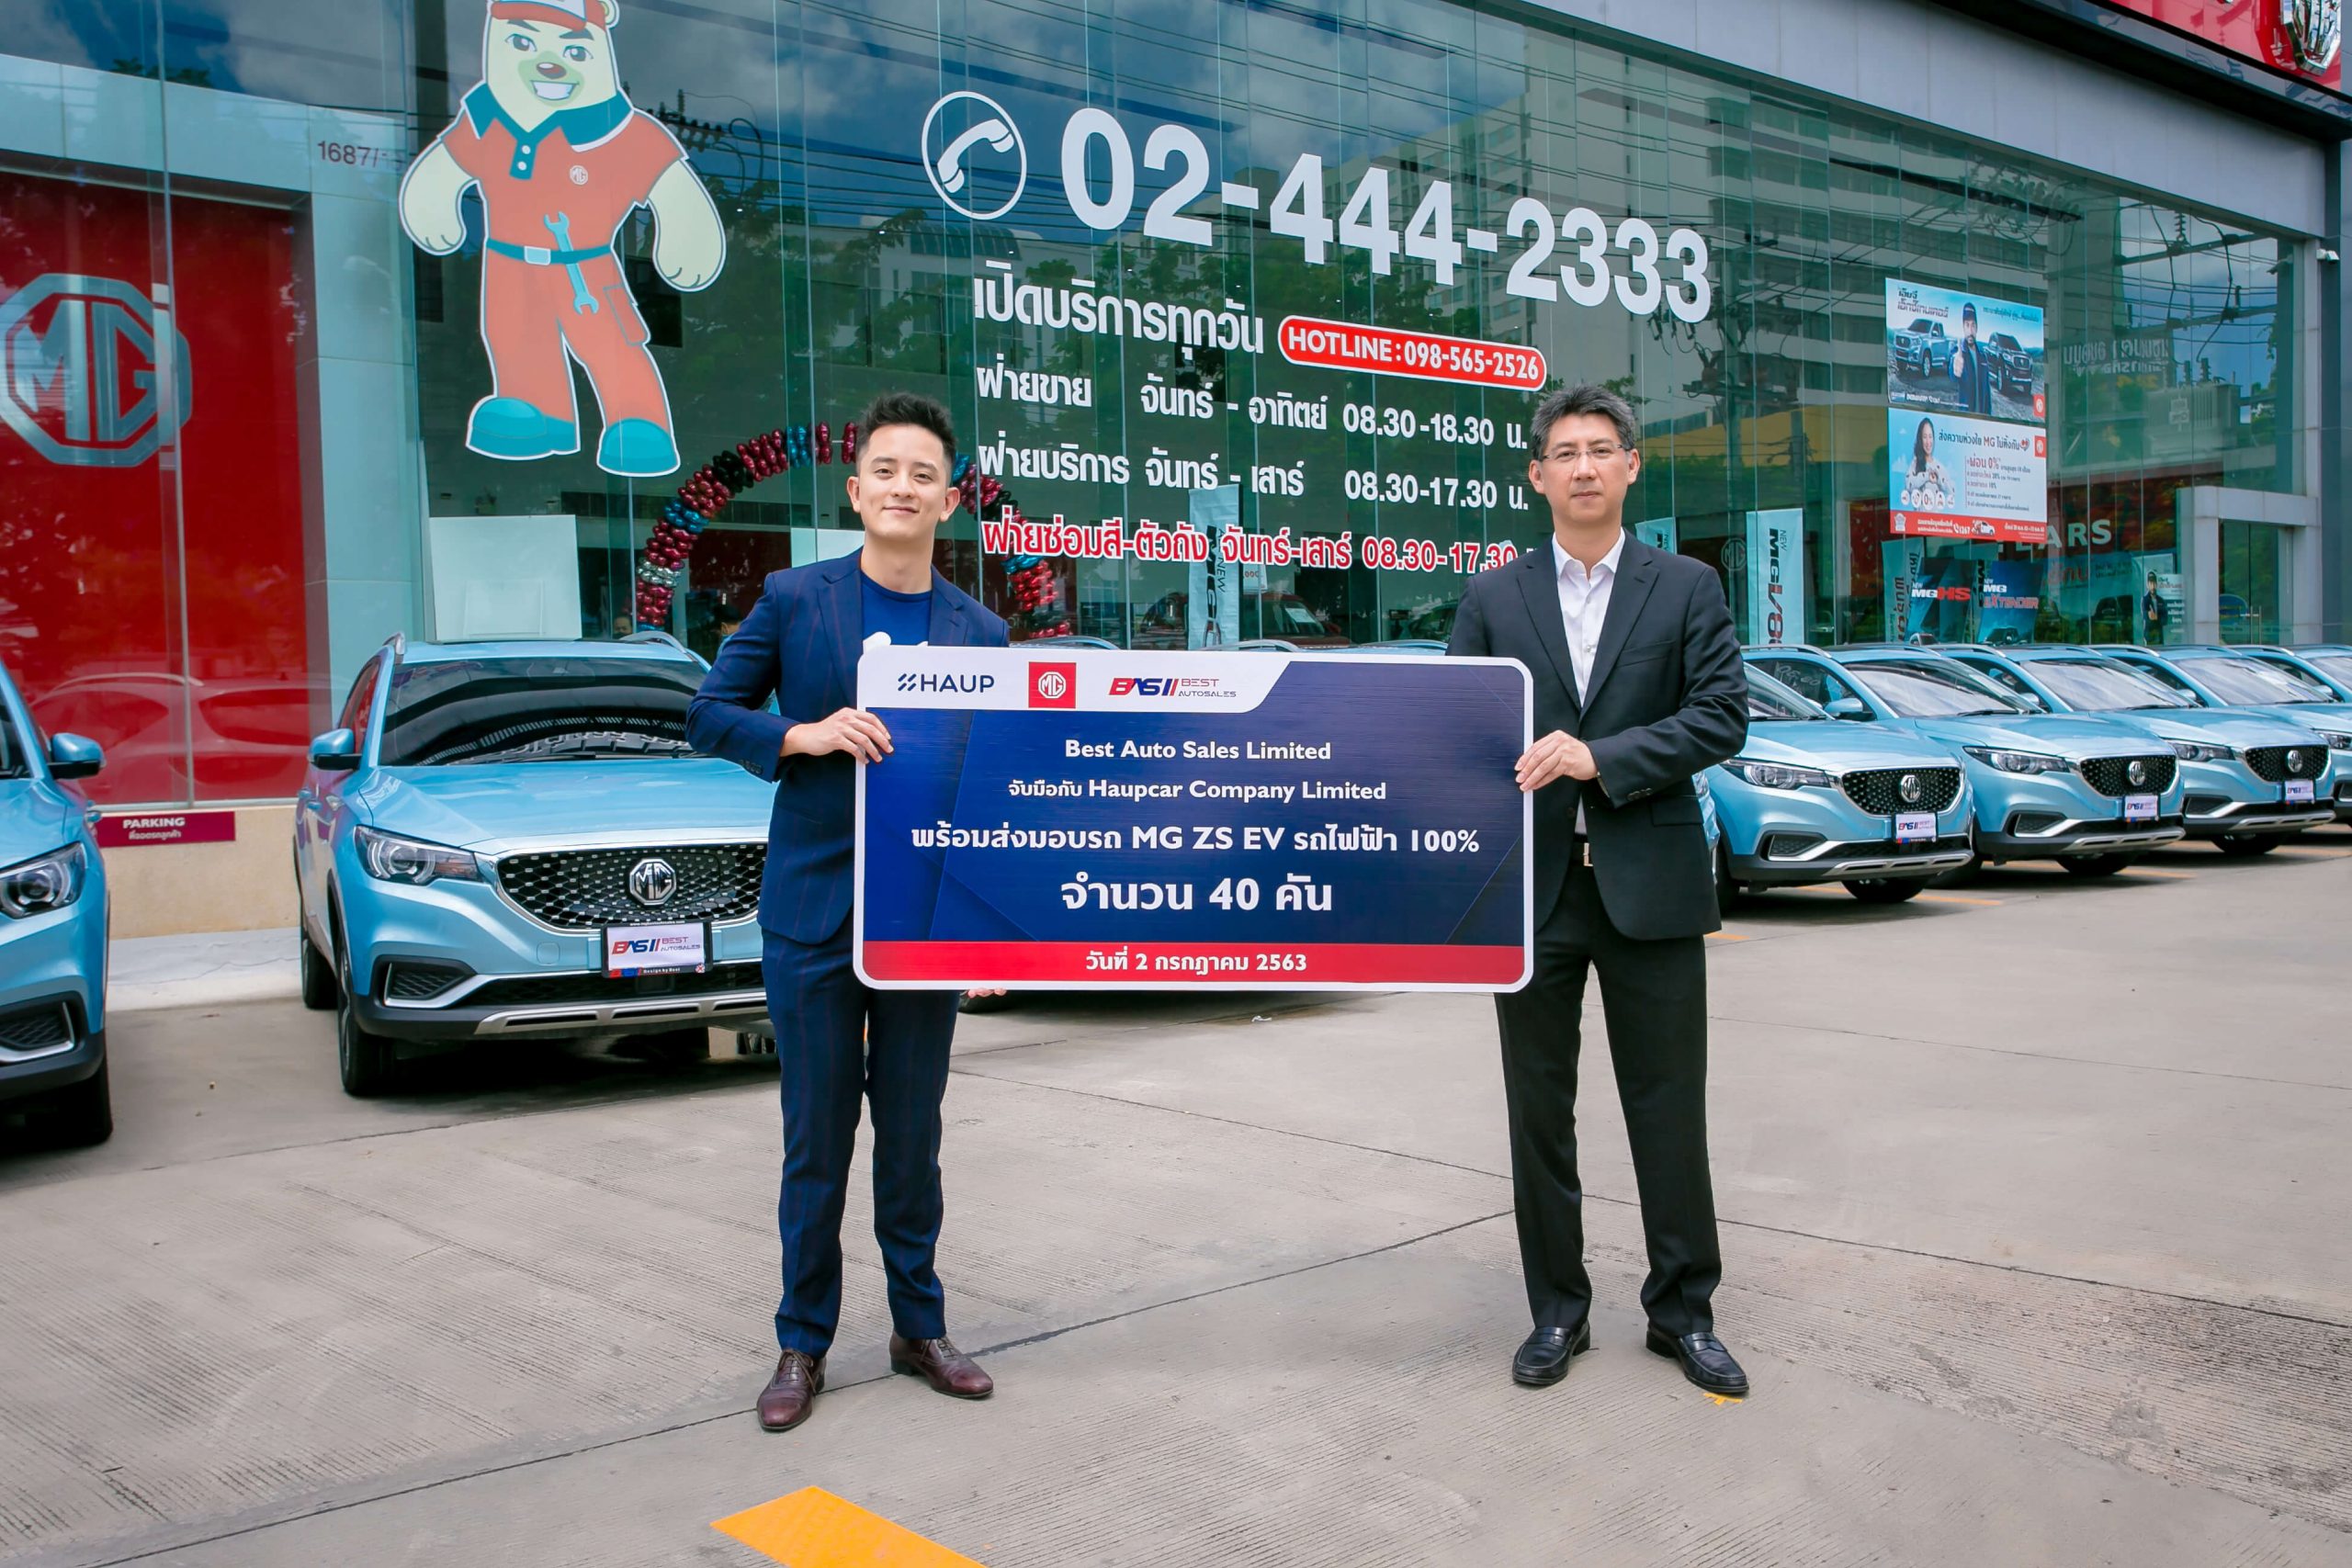 เบส ออโต้เซลล์ สยายปีก! เปิดสาขาใหม่ MG อมตะ 6 เดือนแรก นั่งแท่นแชมป์ยอดขาย EV สูงสุดในไทย